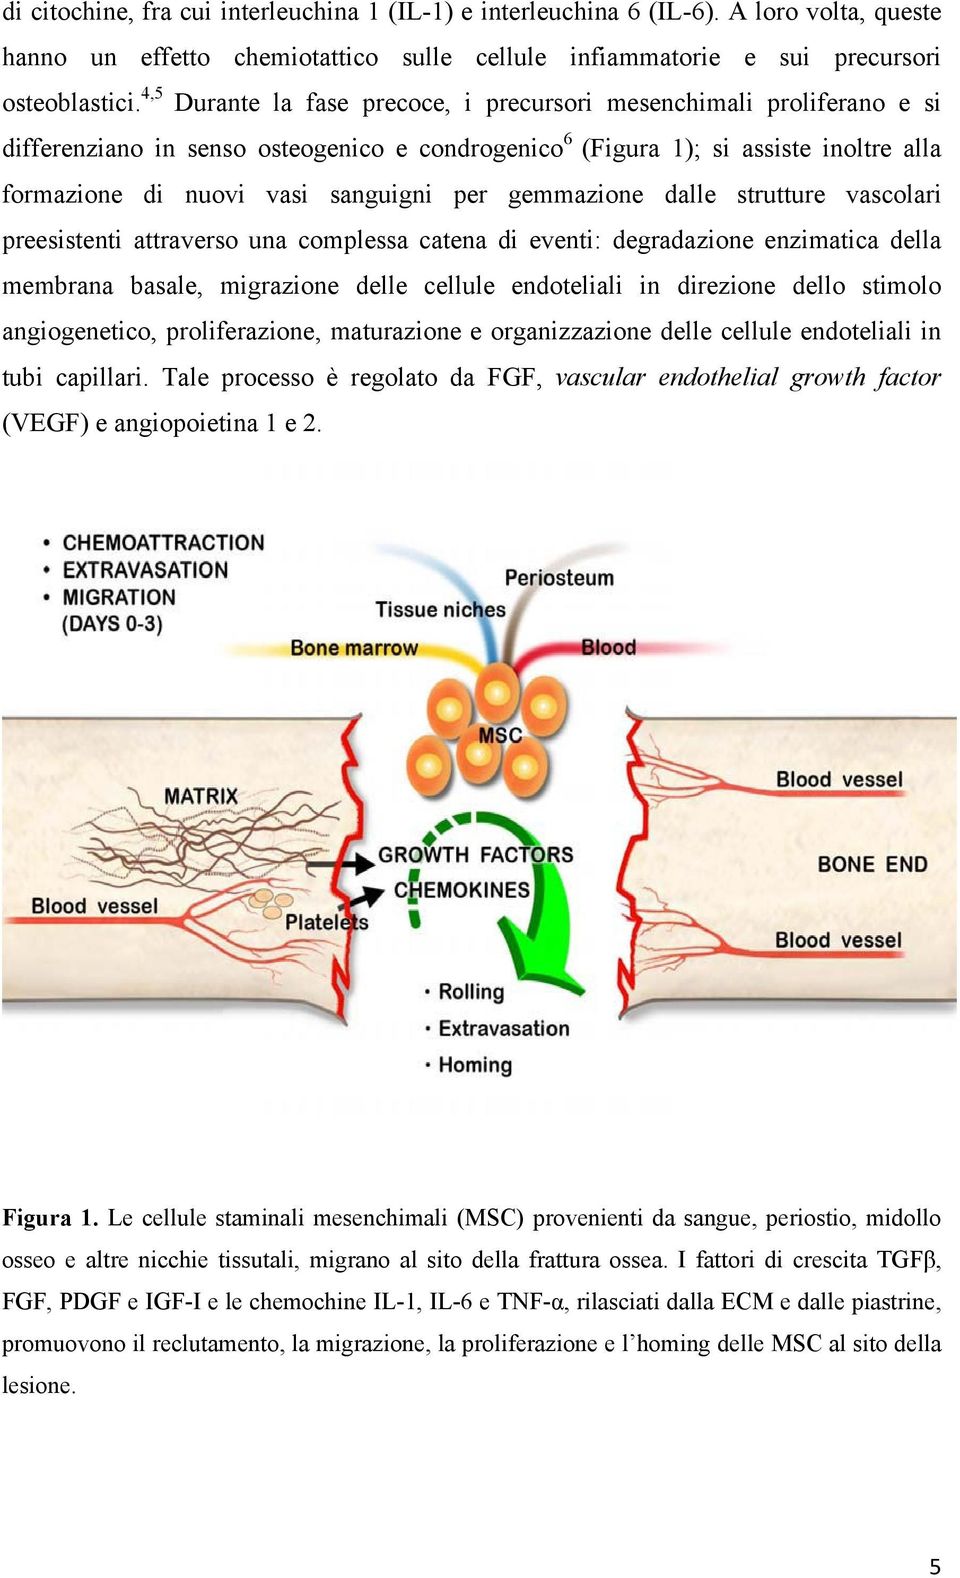 gemmazione dalle strutture vascolari preesistenti attraverso una complessa catena di eventi: degradazione enzimatica della membrana basale, migrazione delle cellule endoteliali in direzione dello